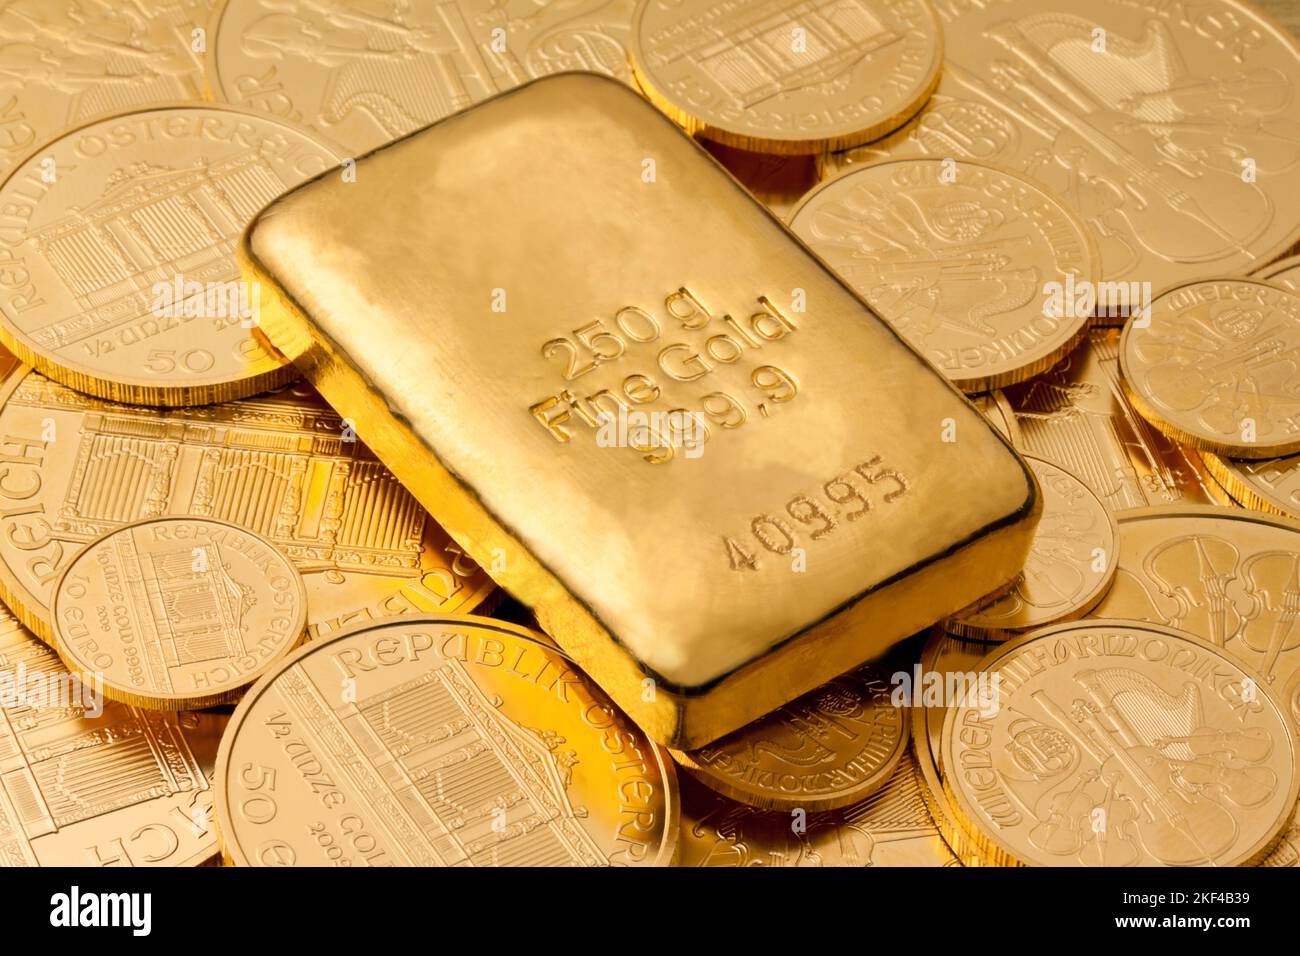 Goldbarren und Goldmünzen als Wertanlage, Stock Photo